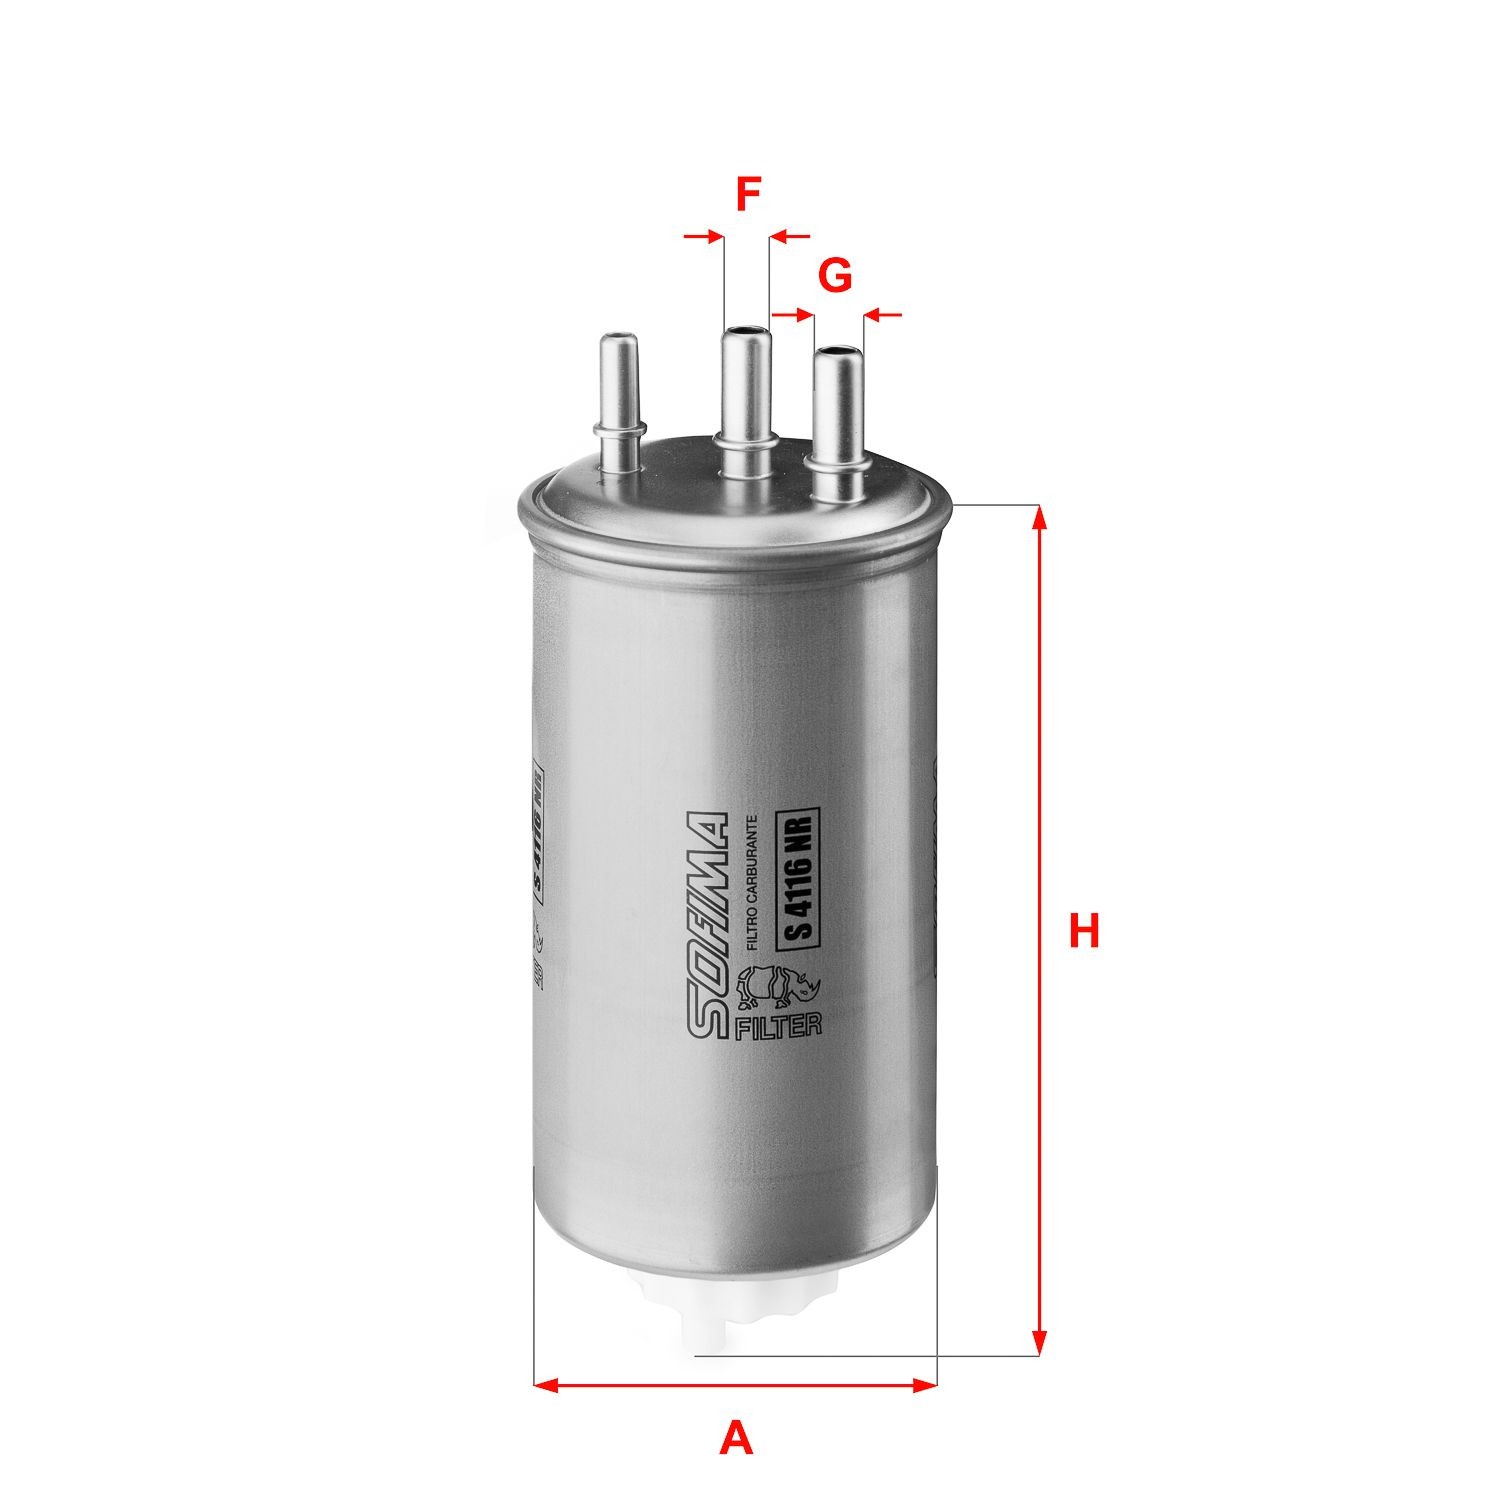 SOFIMA S 4116 NR Fuel filter Filter Insert, 10mm, 10mm